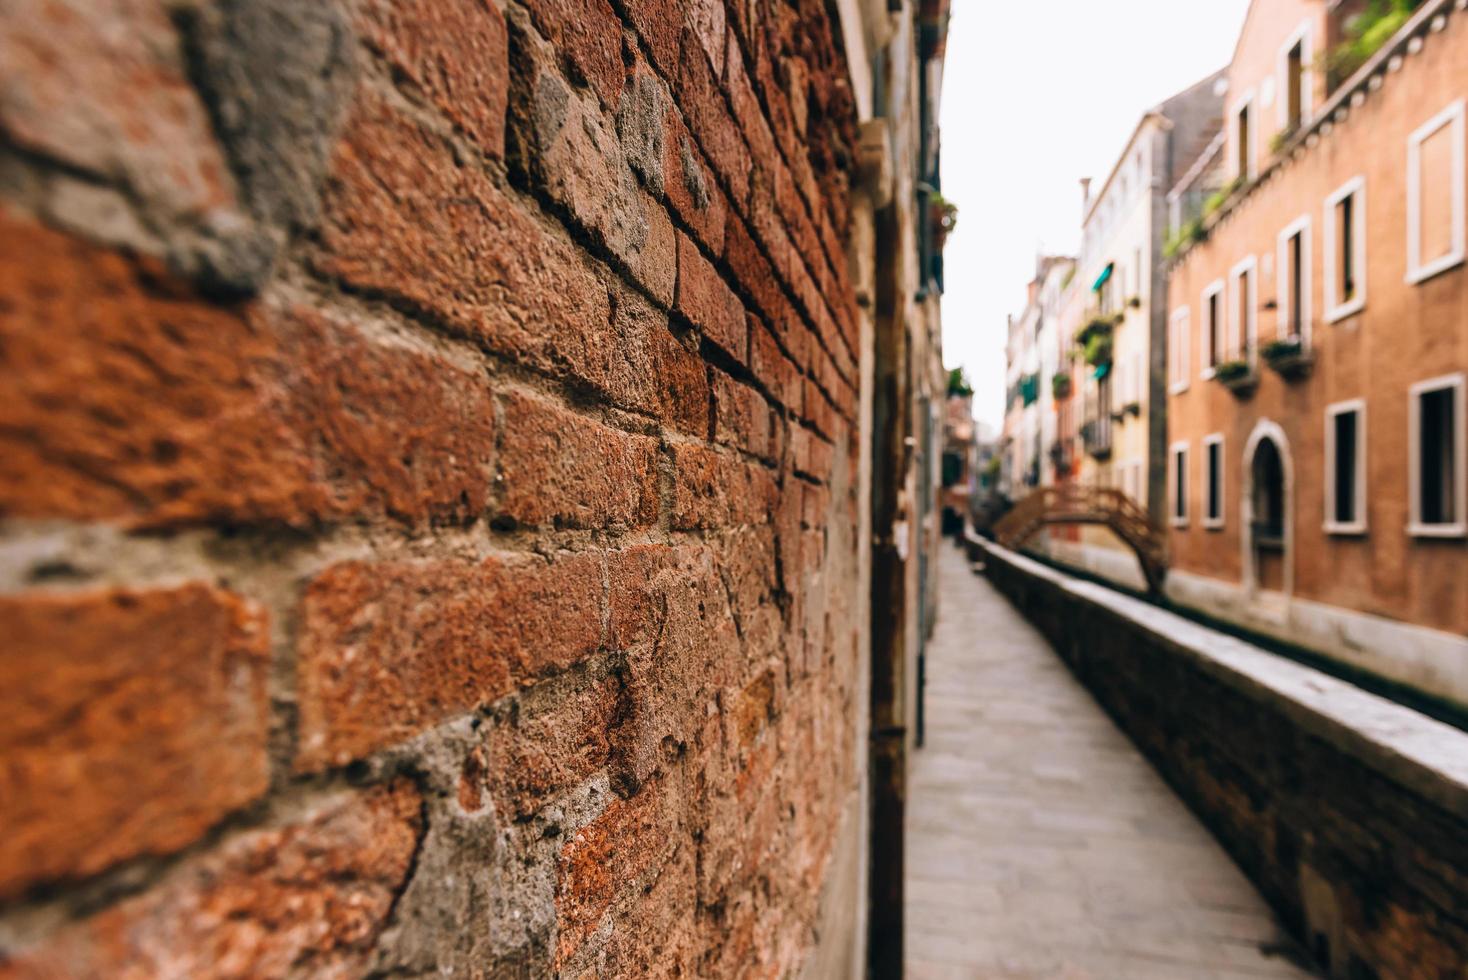 as antigas ruas de veneza da Itália foto